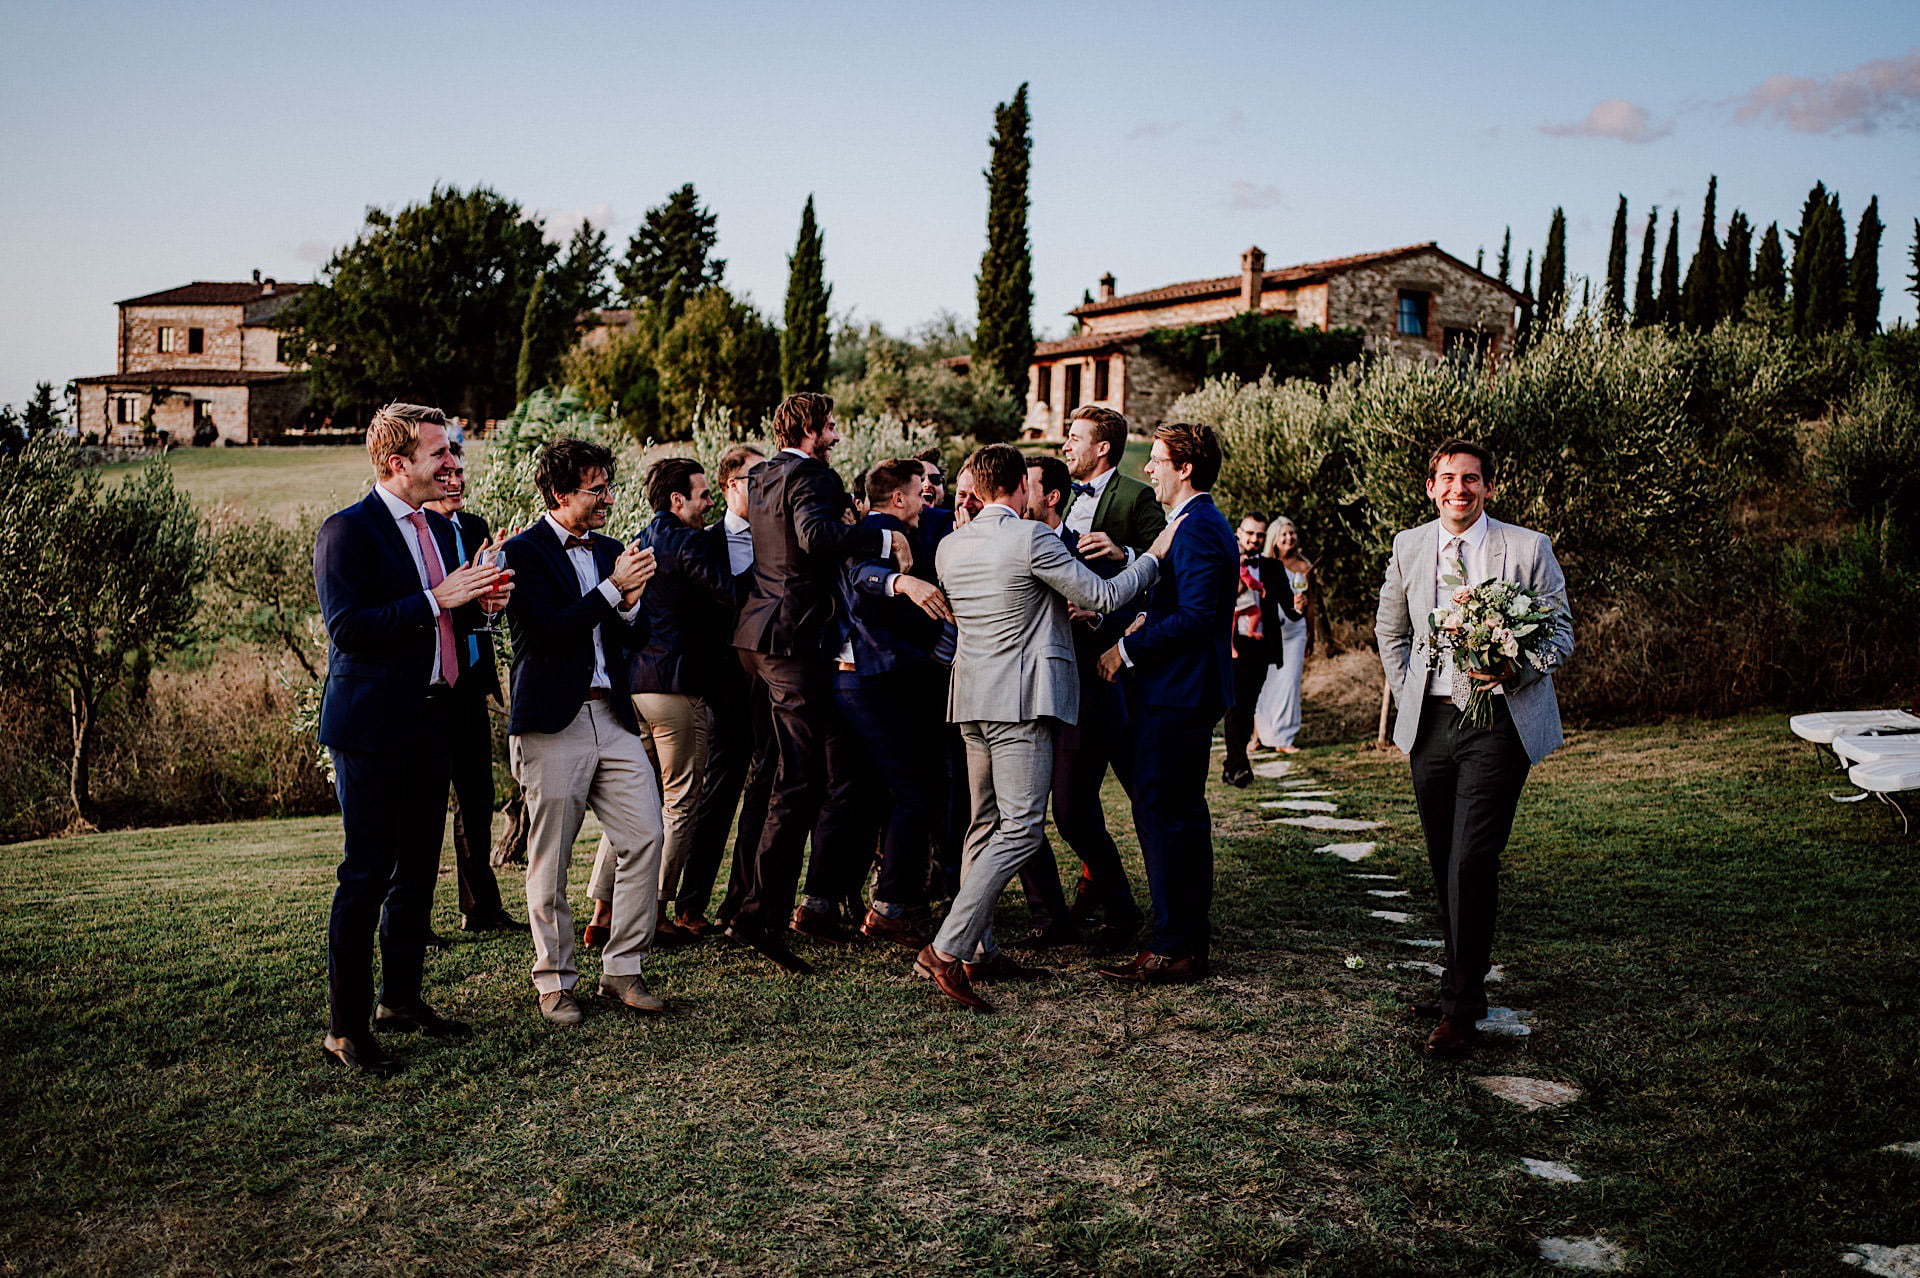 Tuscany Countryside Wedding at Lazy Olive 89